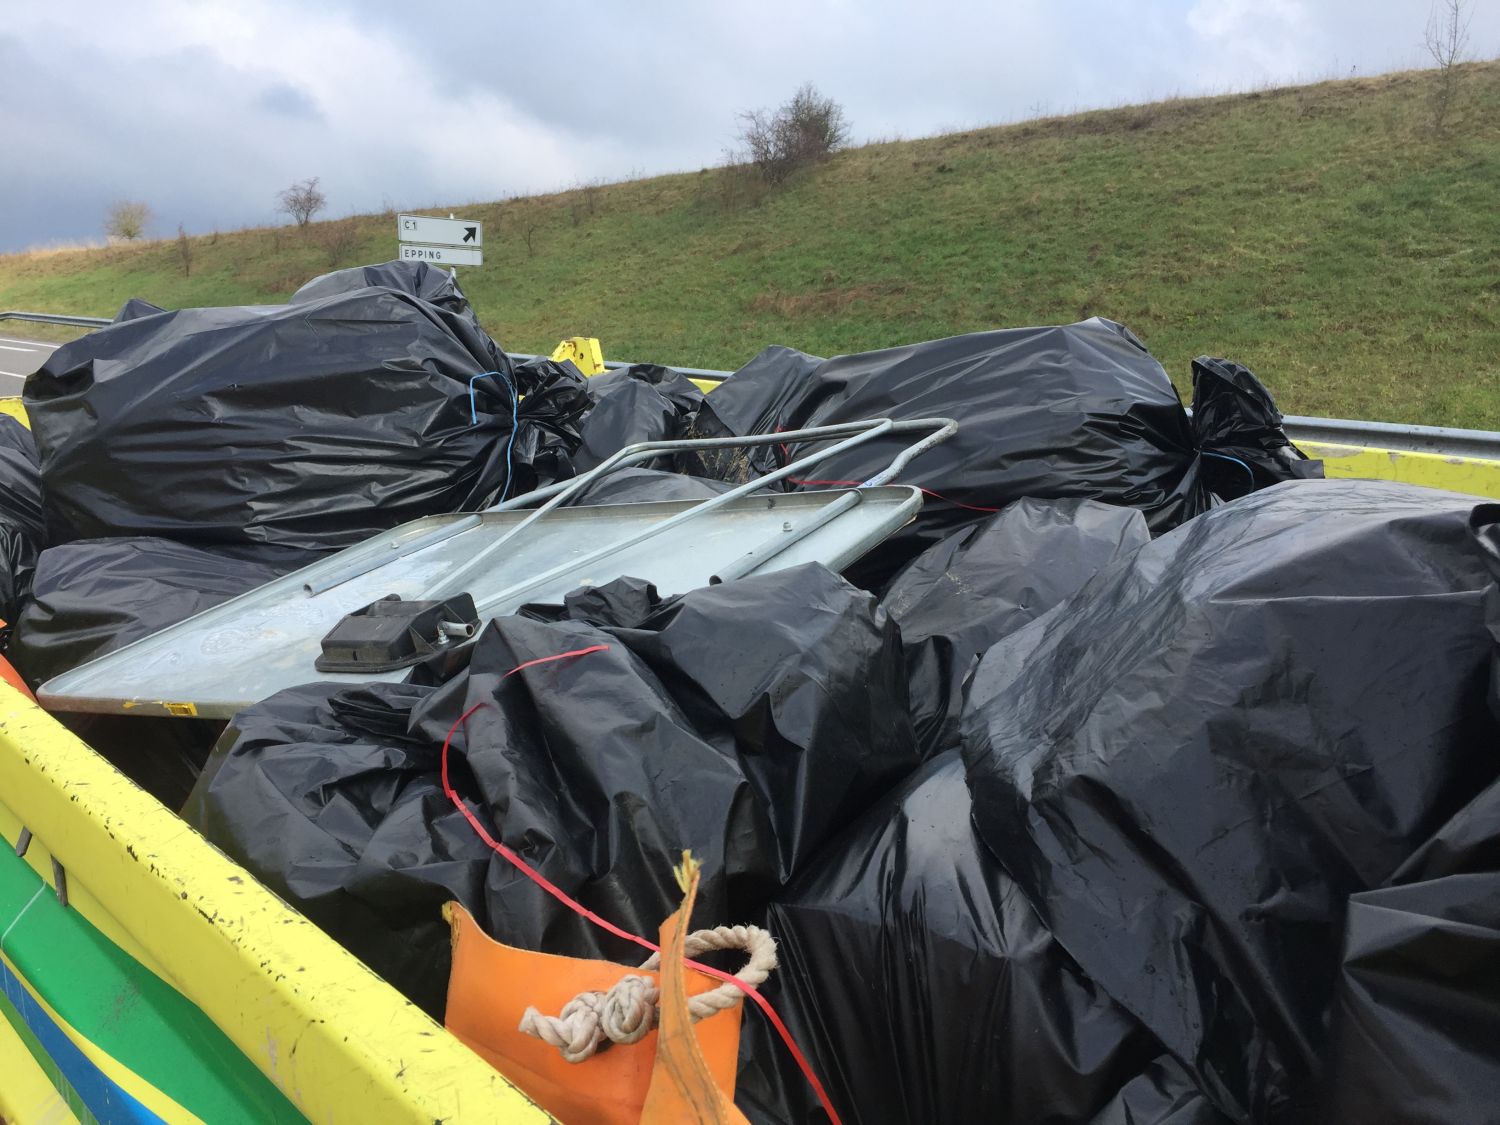 Les déchets au bord des routes en Moselle <br />
se comptent en plusieurs dizaines de tonnes